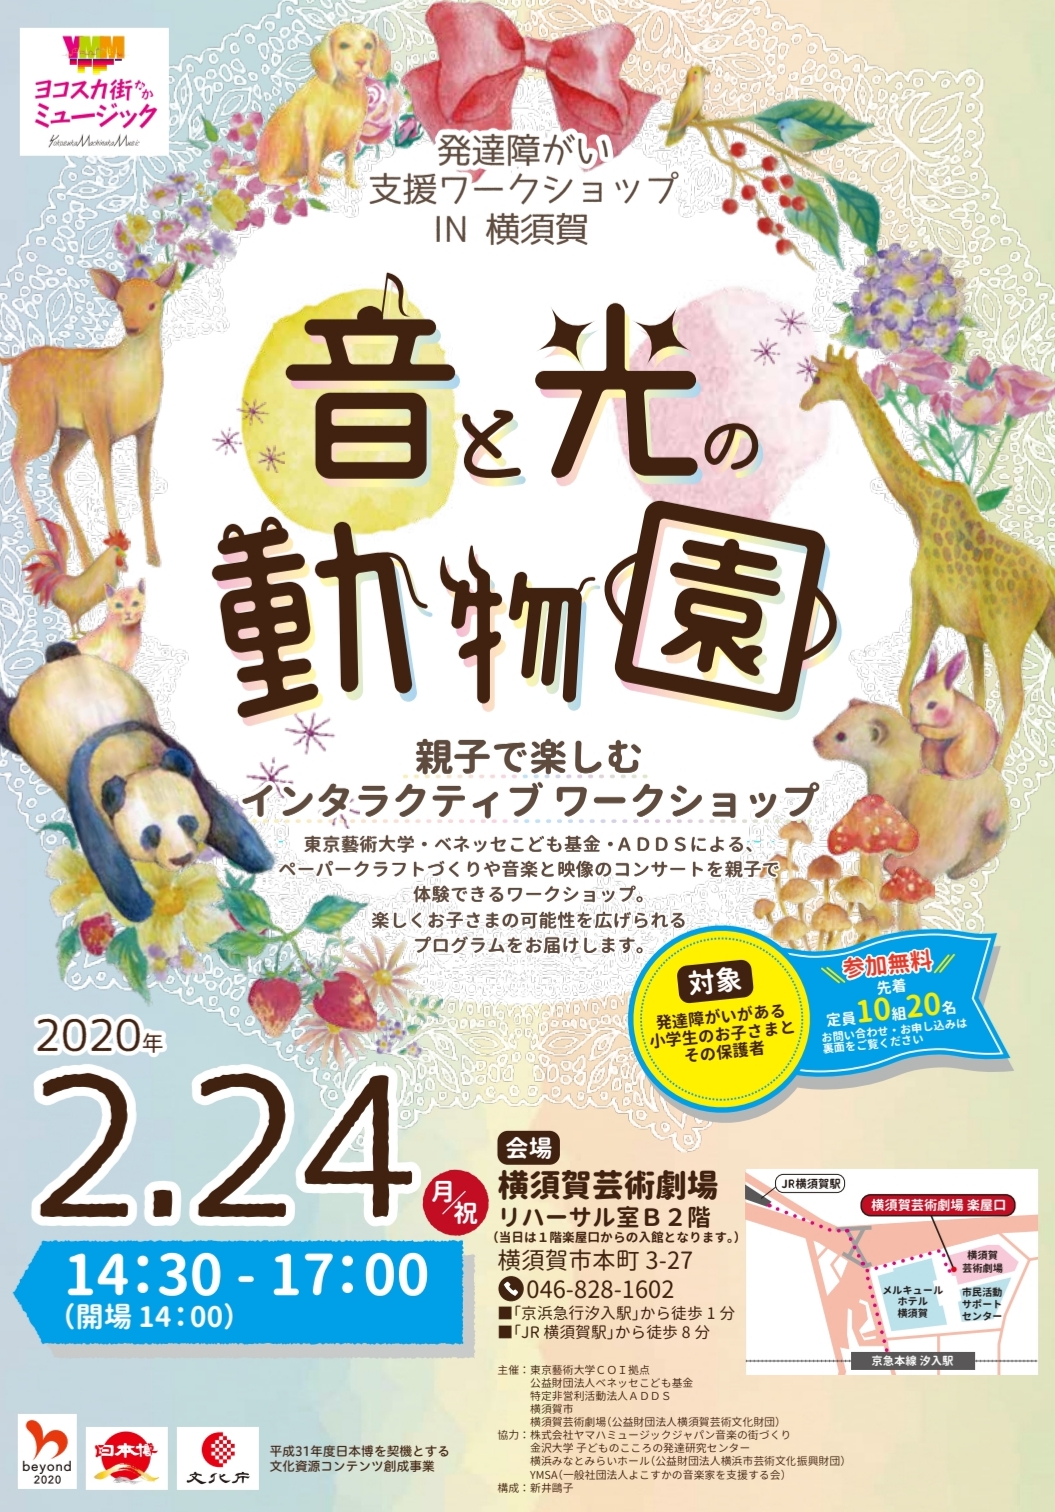 ワークショップ 親子で楽しむ 音と光の動物園 横須賀芸術劇場 2 24 Mon Sukasuka Ippo